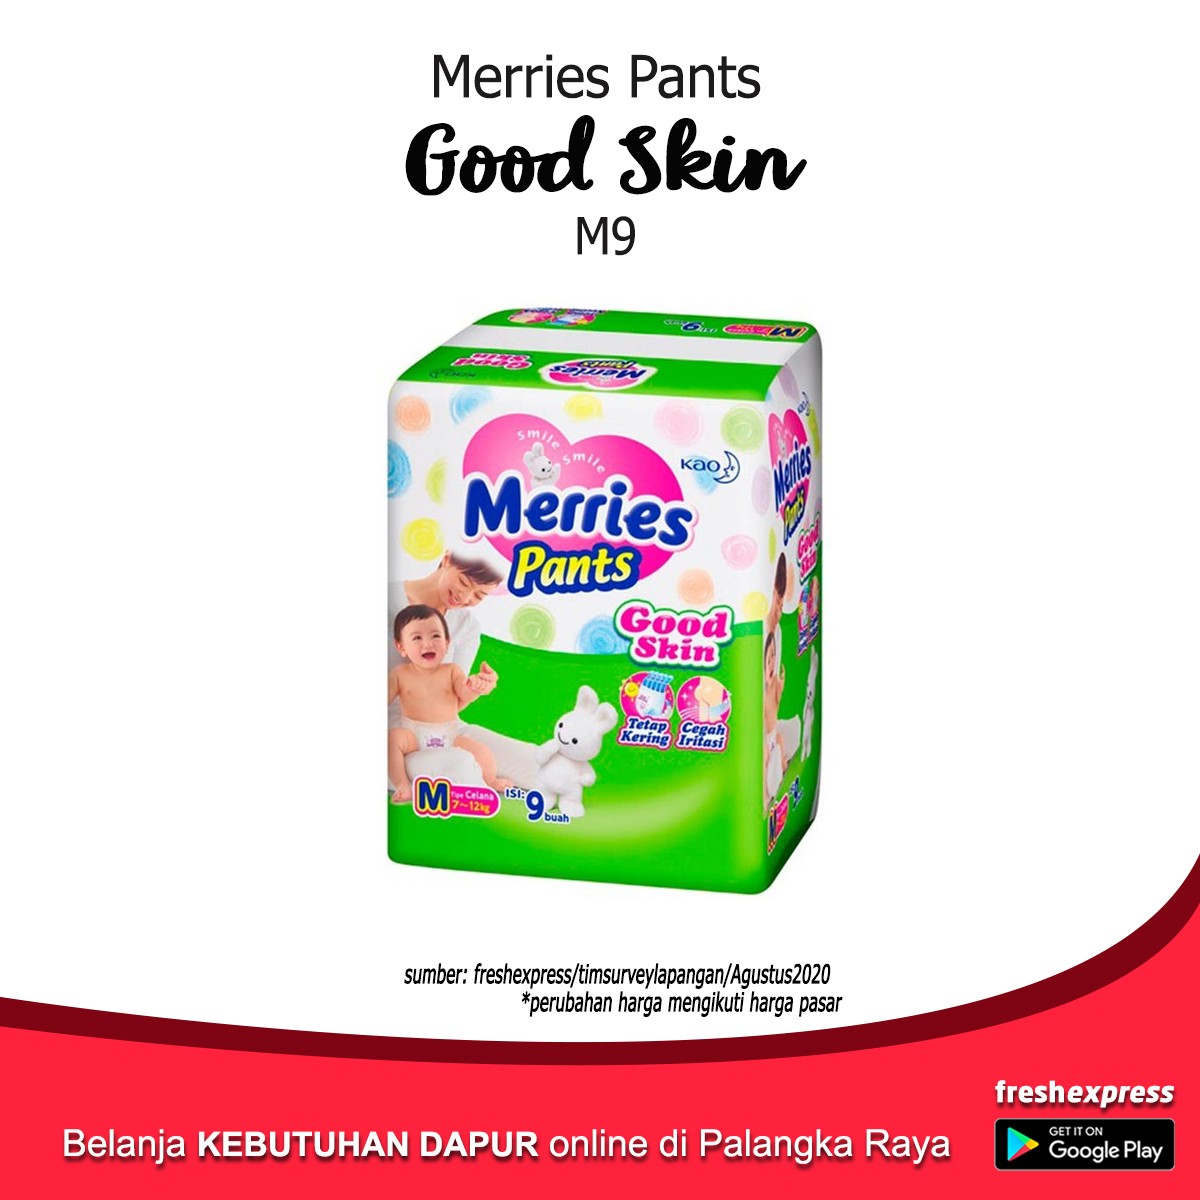 Merries Pants Good Skin M9